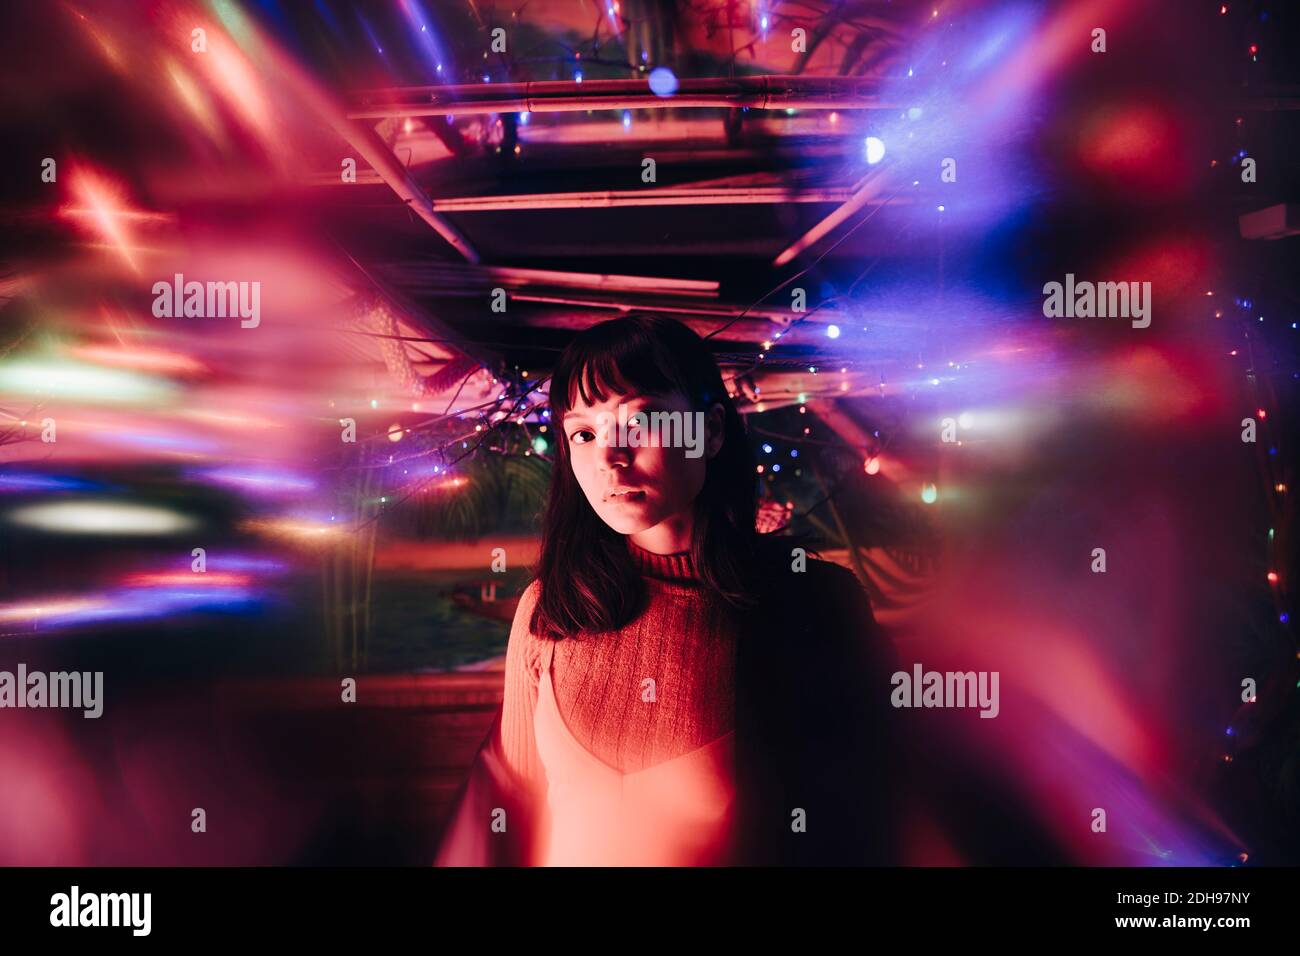 Porträt einer jungen Frau, die inmitten von beleuchteten bunten Lichtern steht An der Bar Stockfoto